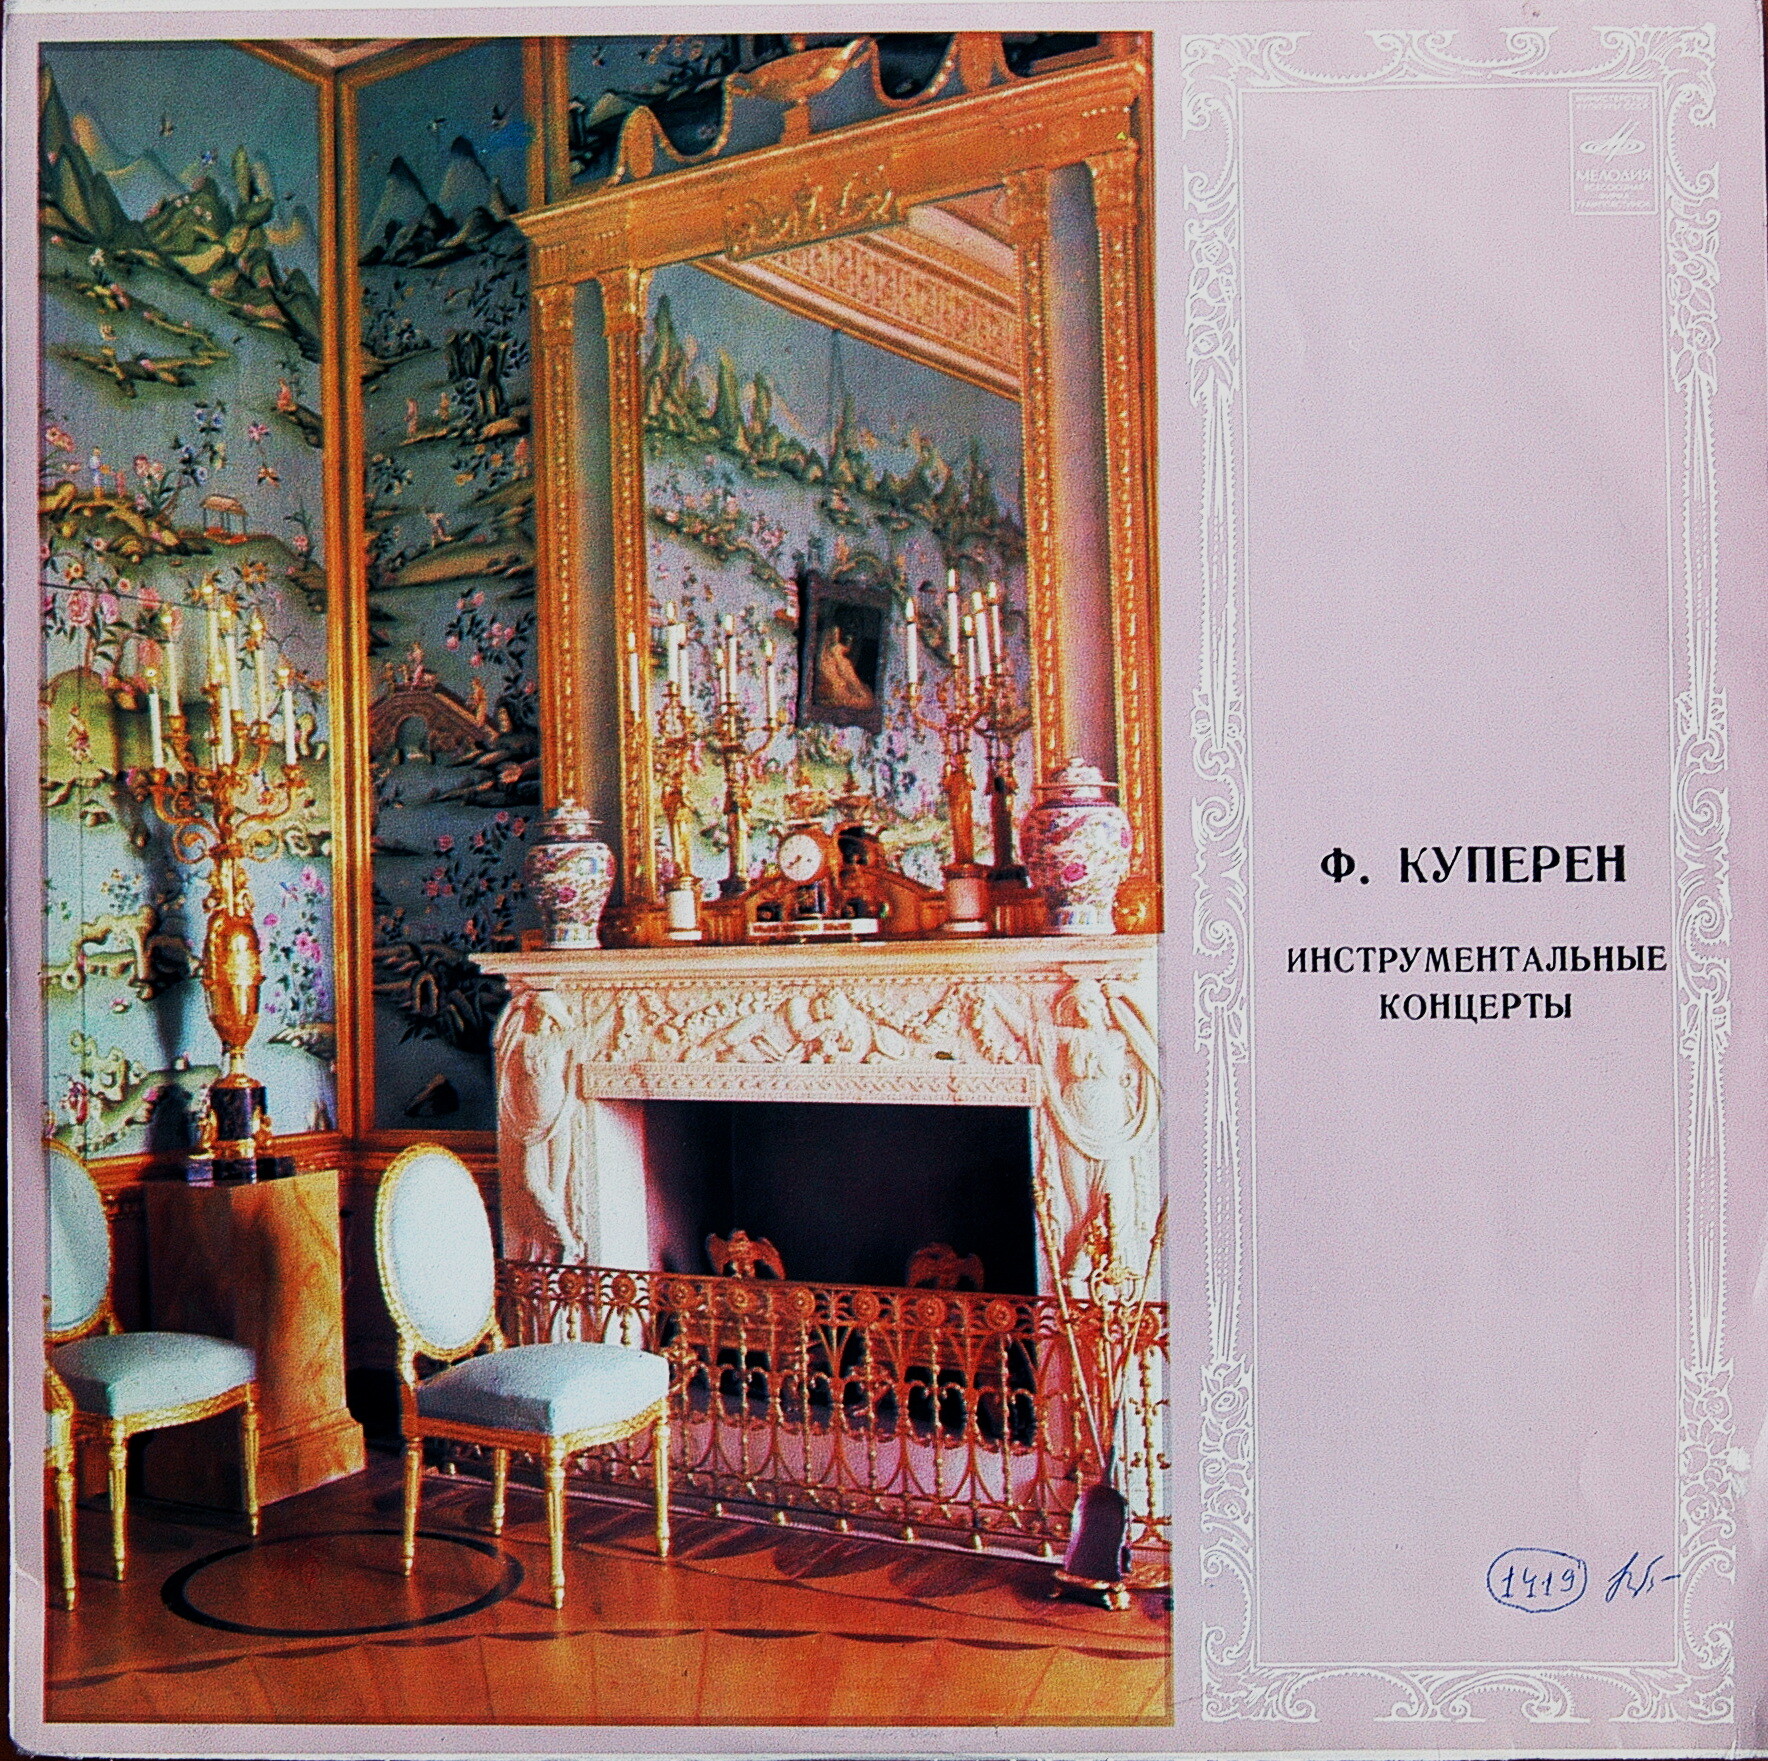 Ф. Куперен (1668-1733) - Апофеоз Люлли. Инструментальный концерт